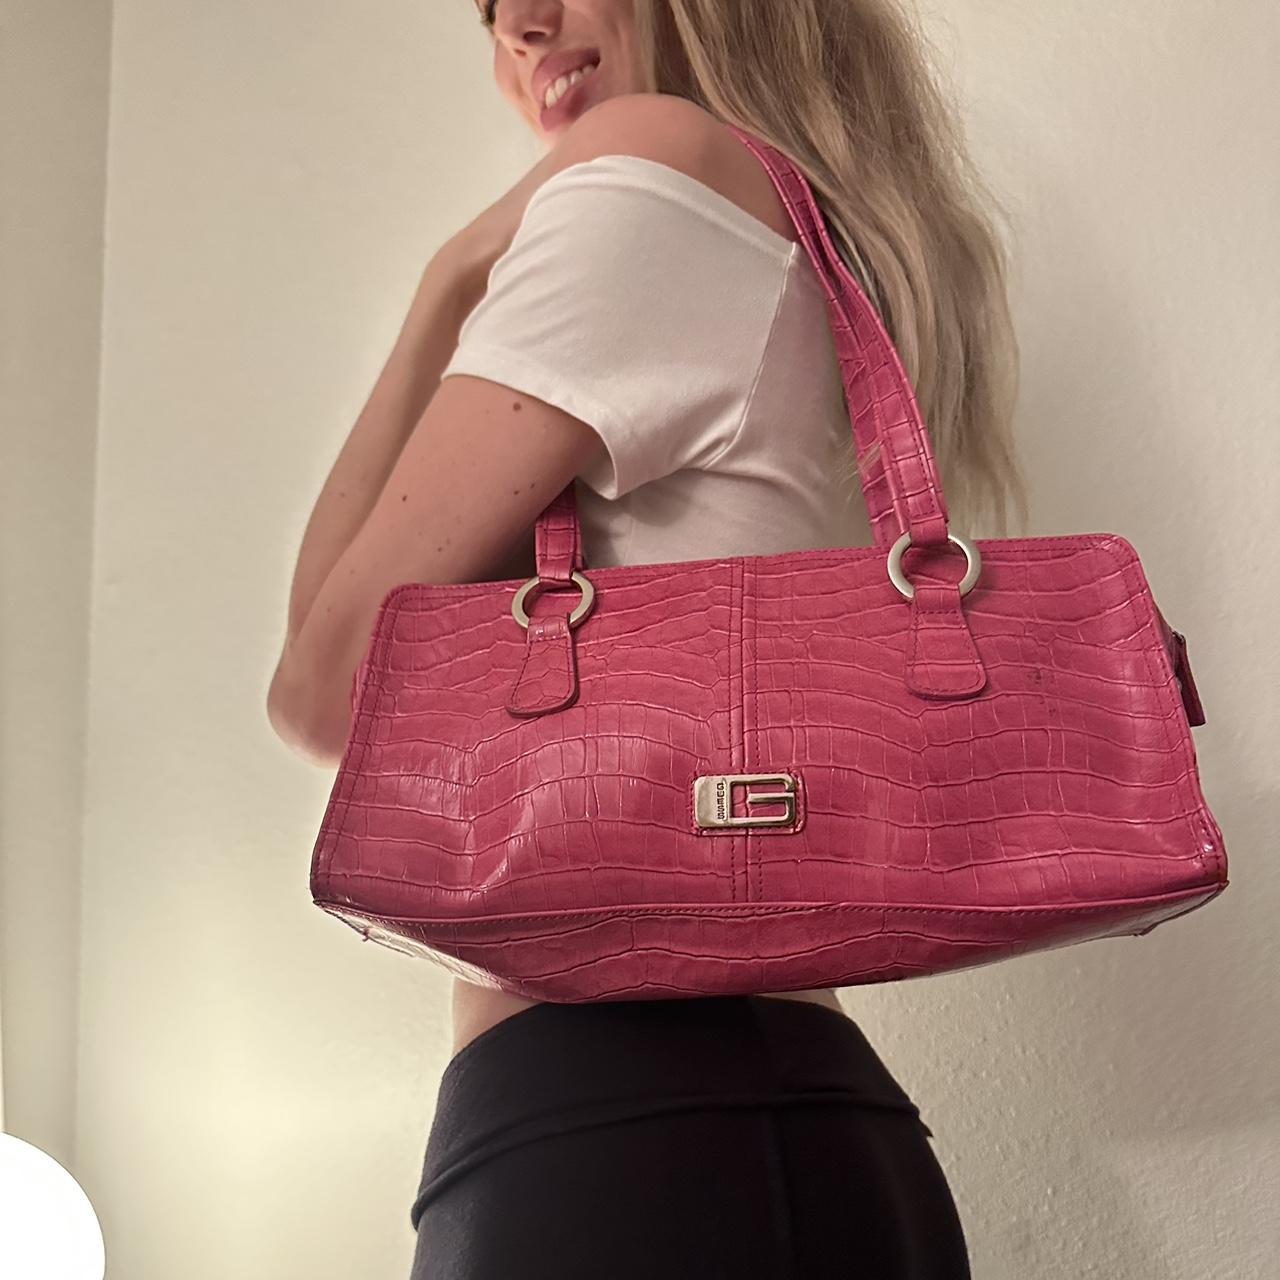 Guess y2k leather bag pink - Depop